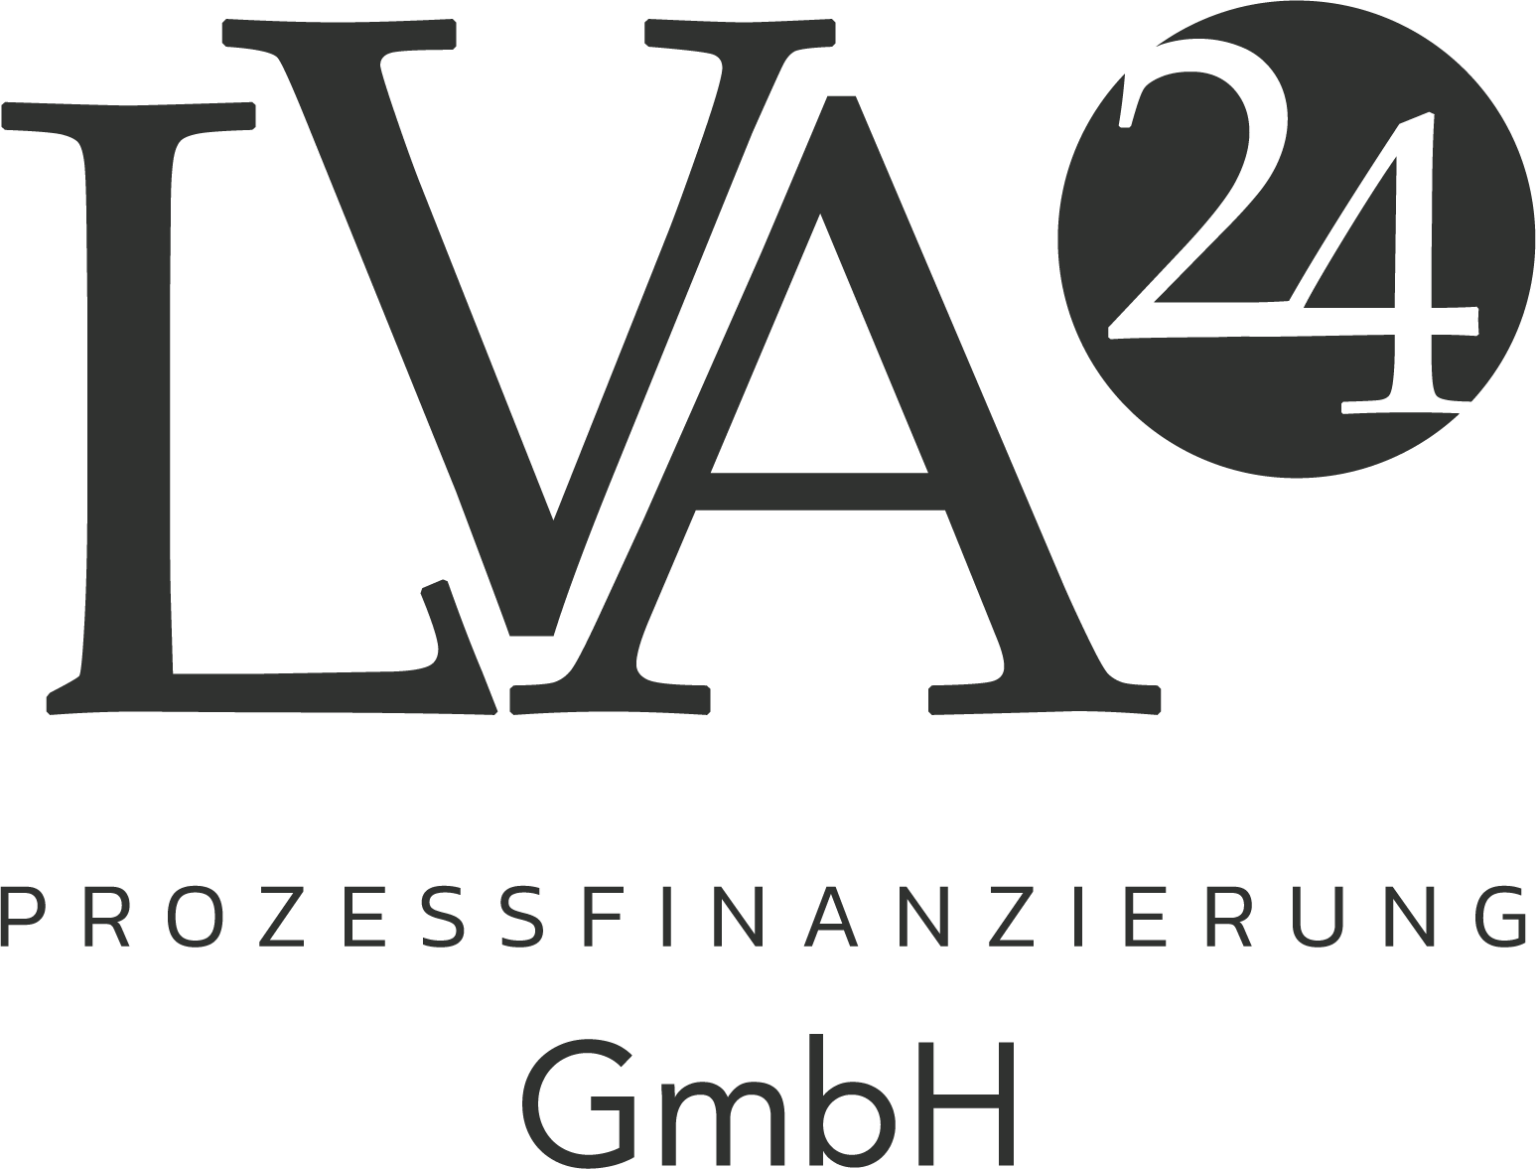 LVA24 Prozessfinanzierung GmbH Png